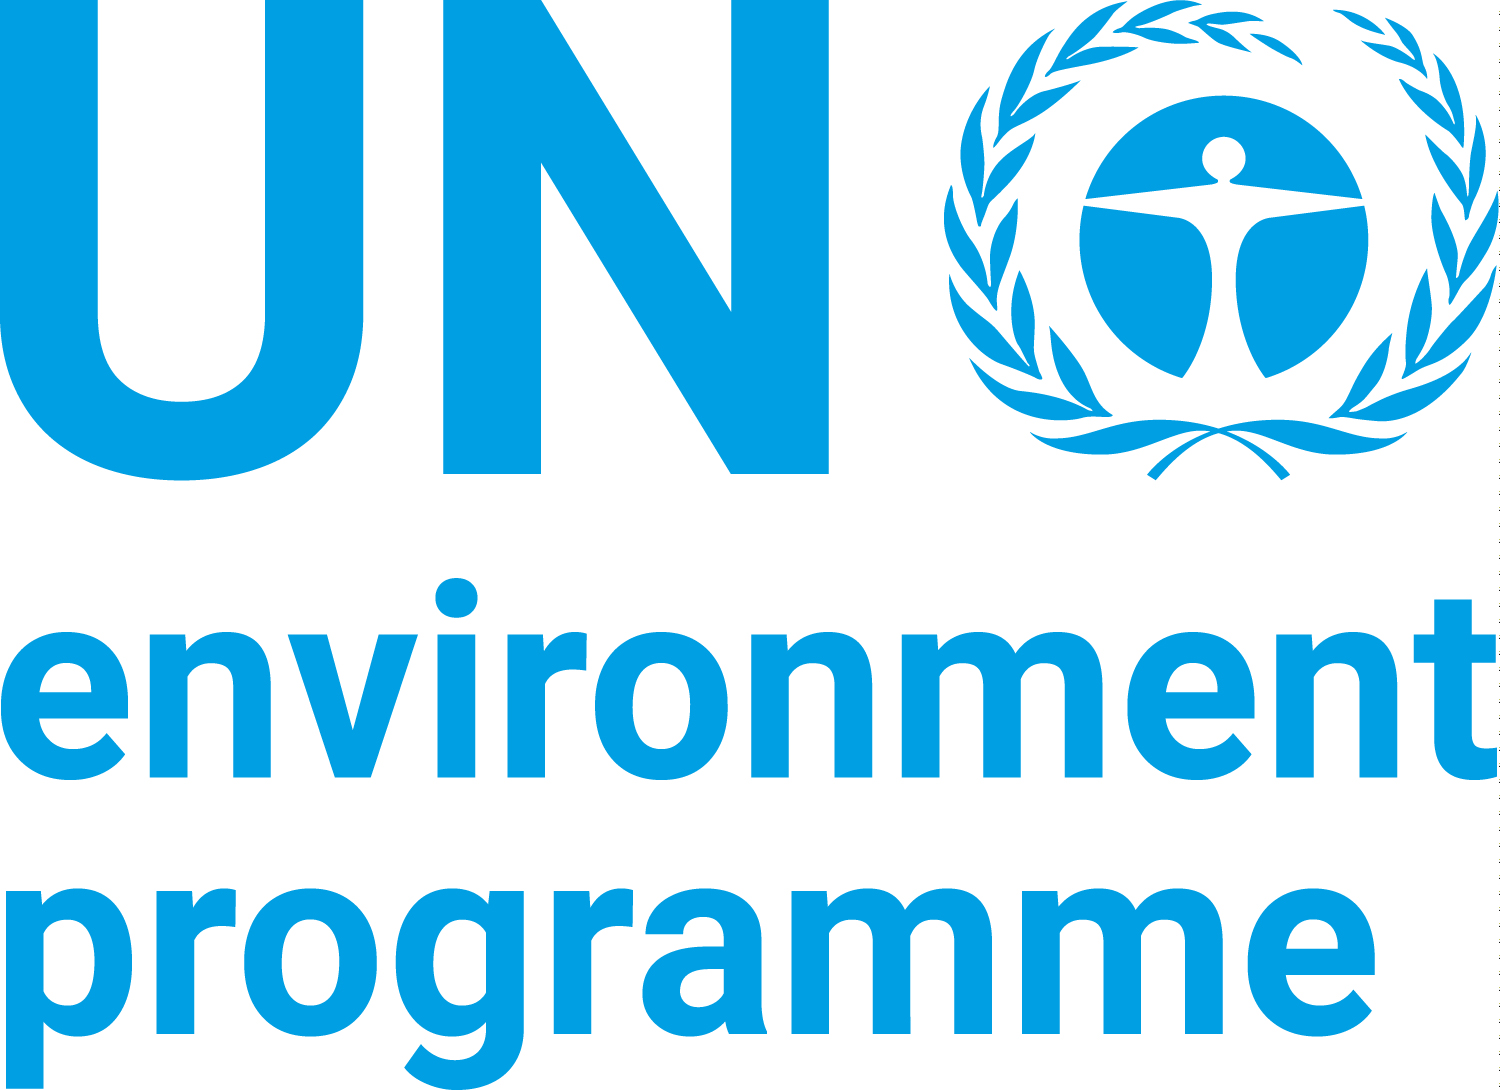 UNEP logo